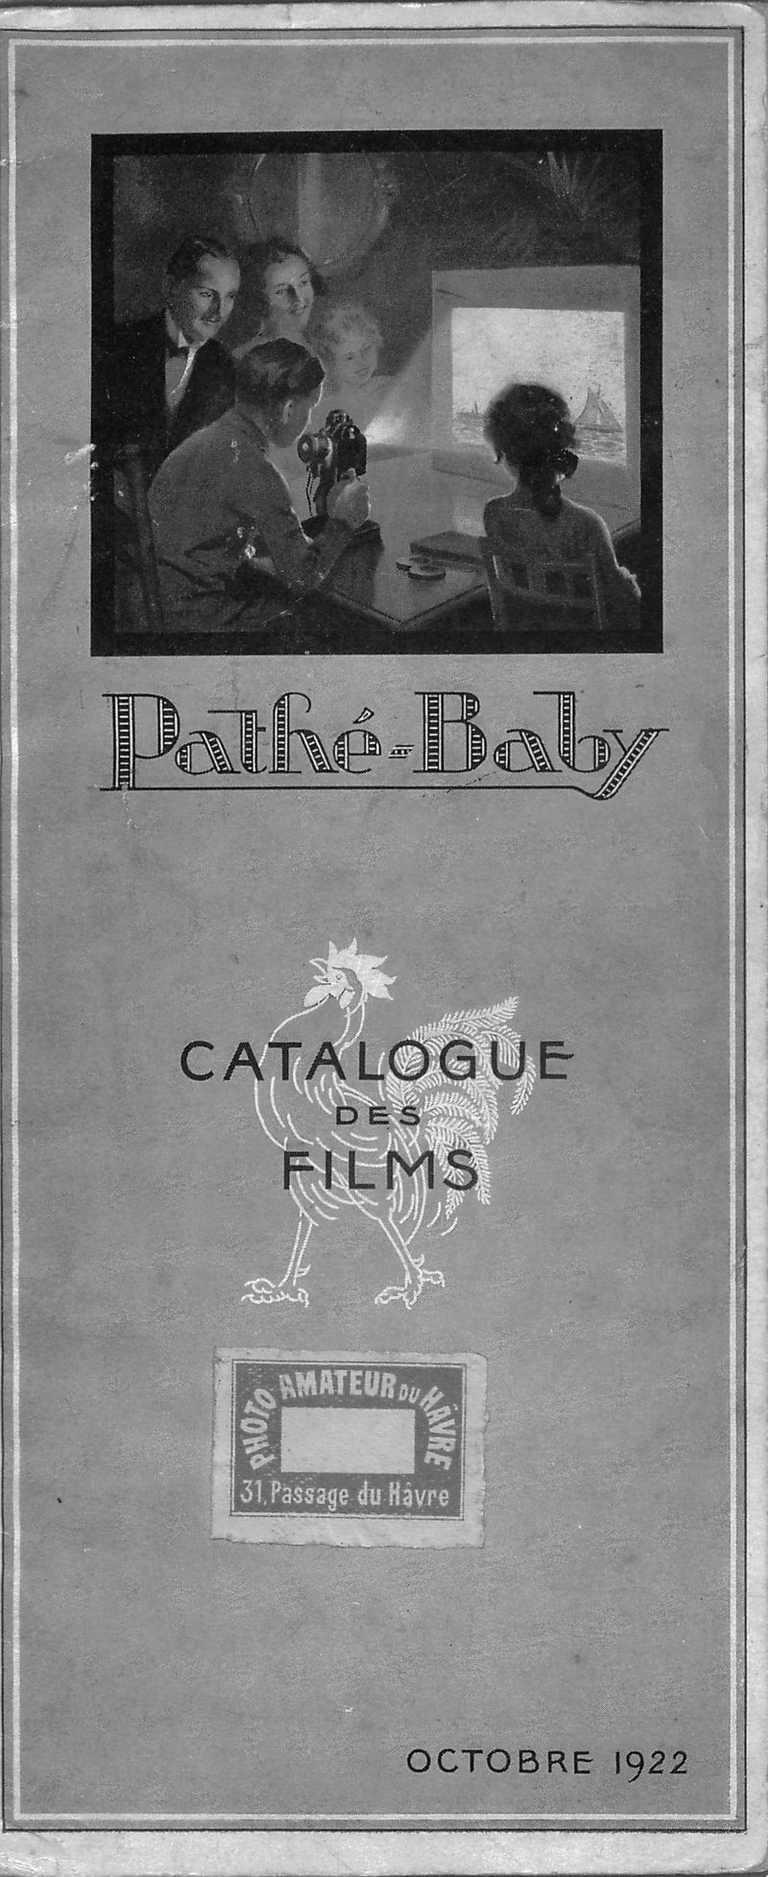 Catalogue de Films Pathé-Baby - octobre 1922 - 28 pages